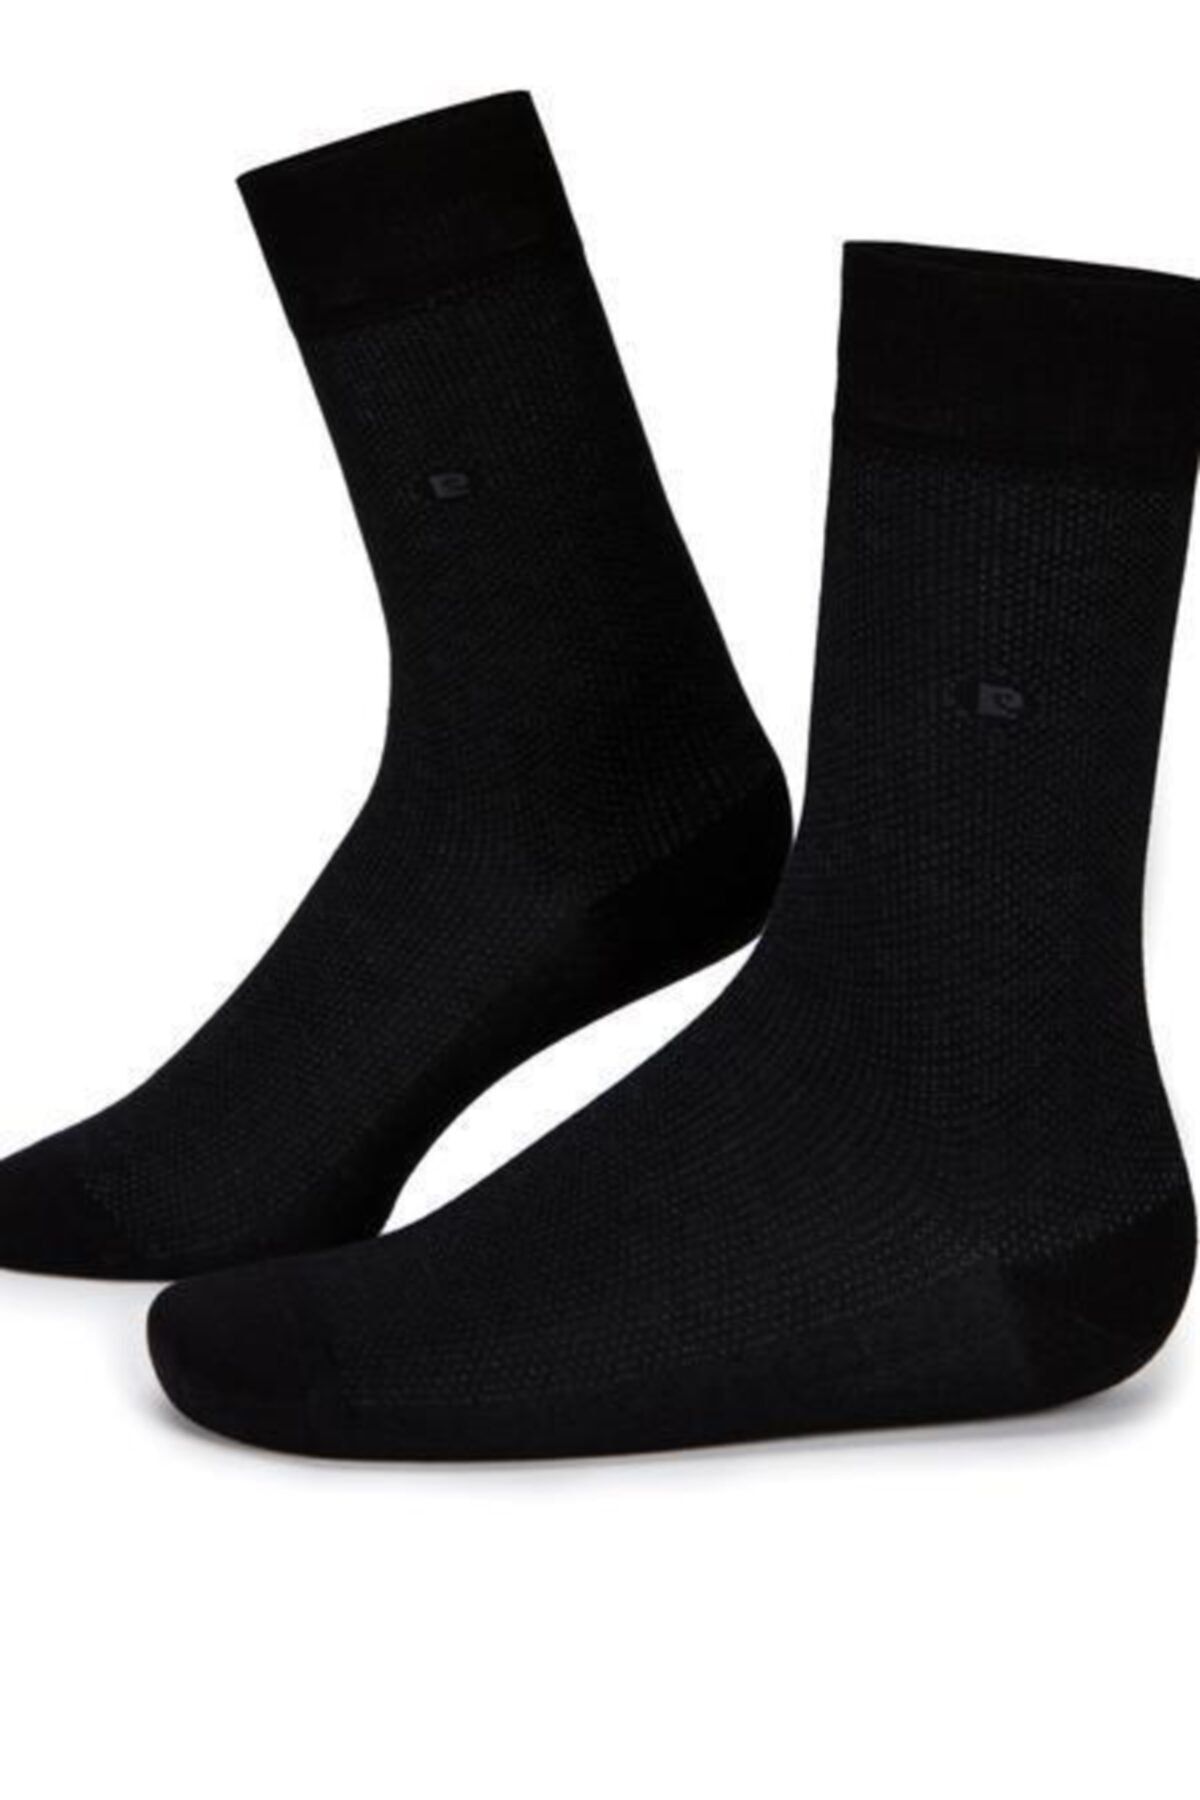 Pierre Cardin Erkek Çorap